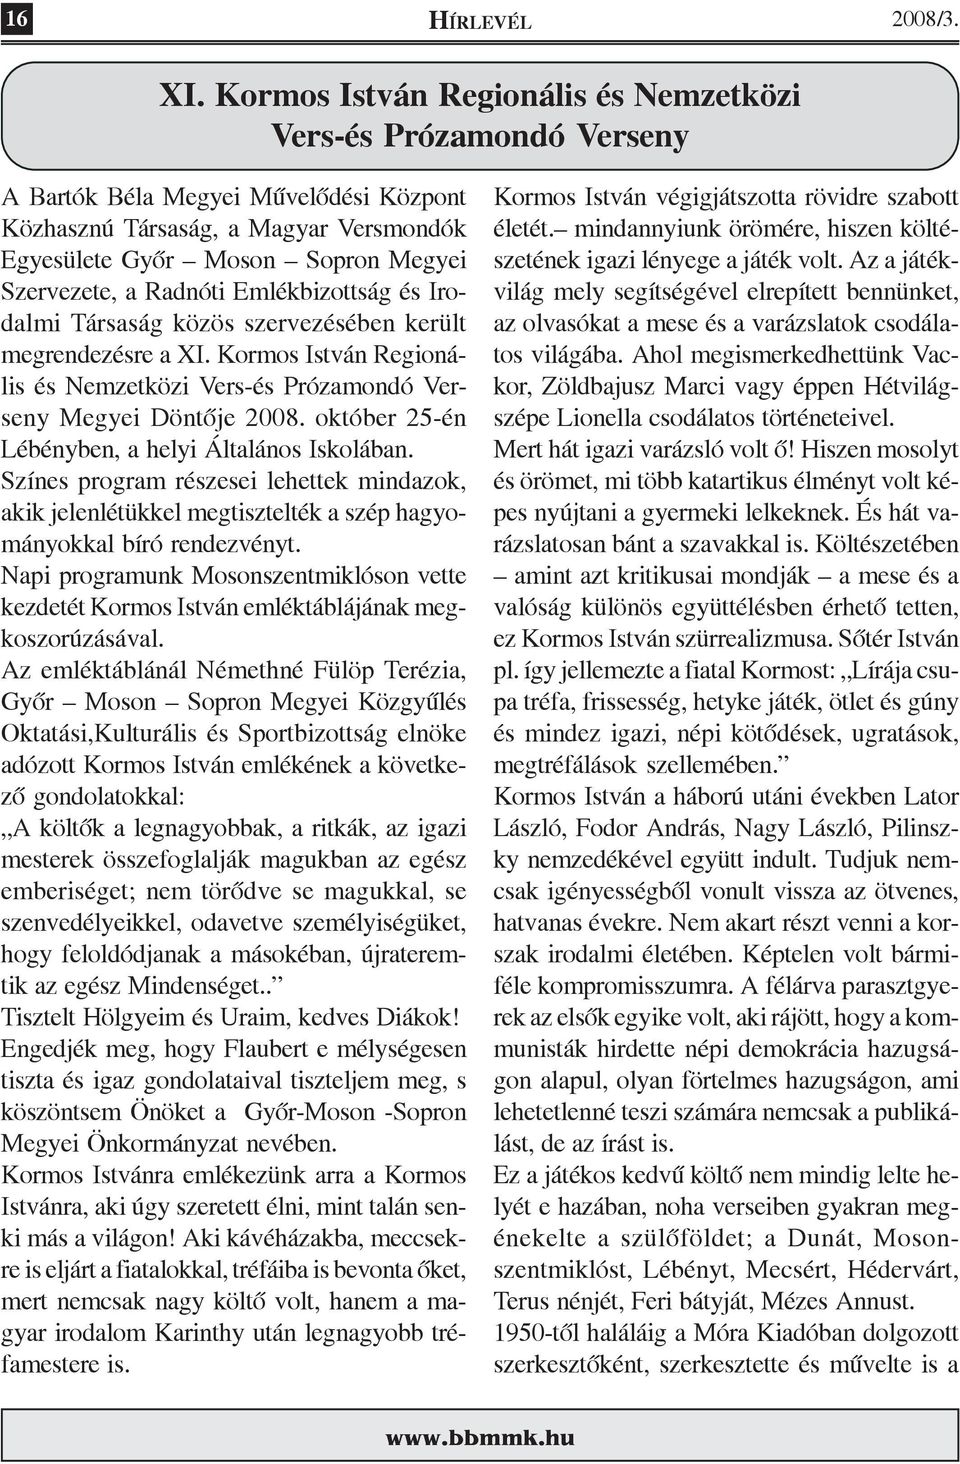 Radnóti Emlékbizottság és Irodalmi Társaság közös szervezésében került megrendezésre a XI. Kormos István Regionális és Nemzetközi Vers-és Prózamondó Verseny Megyei Döntõje 2008.